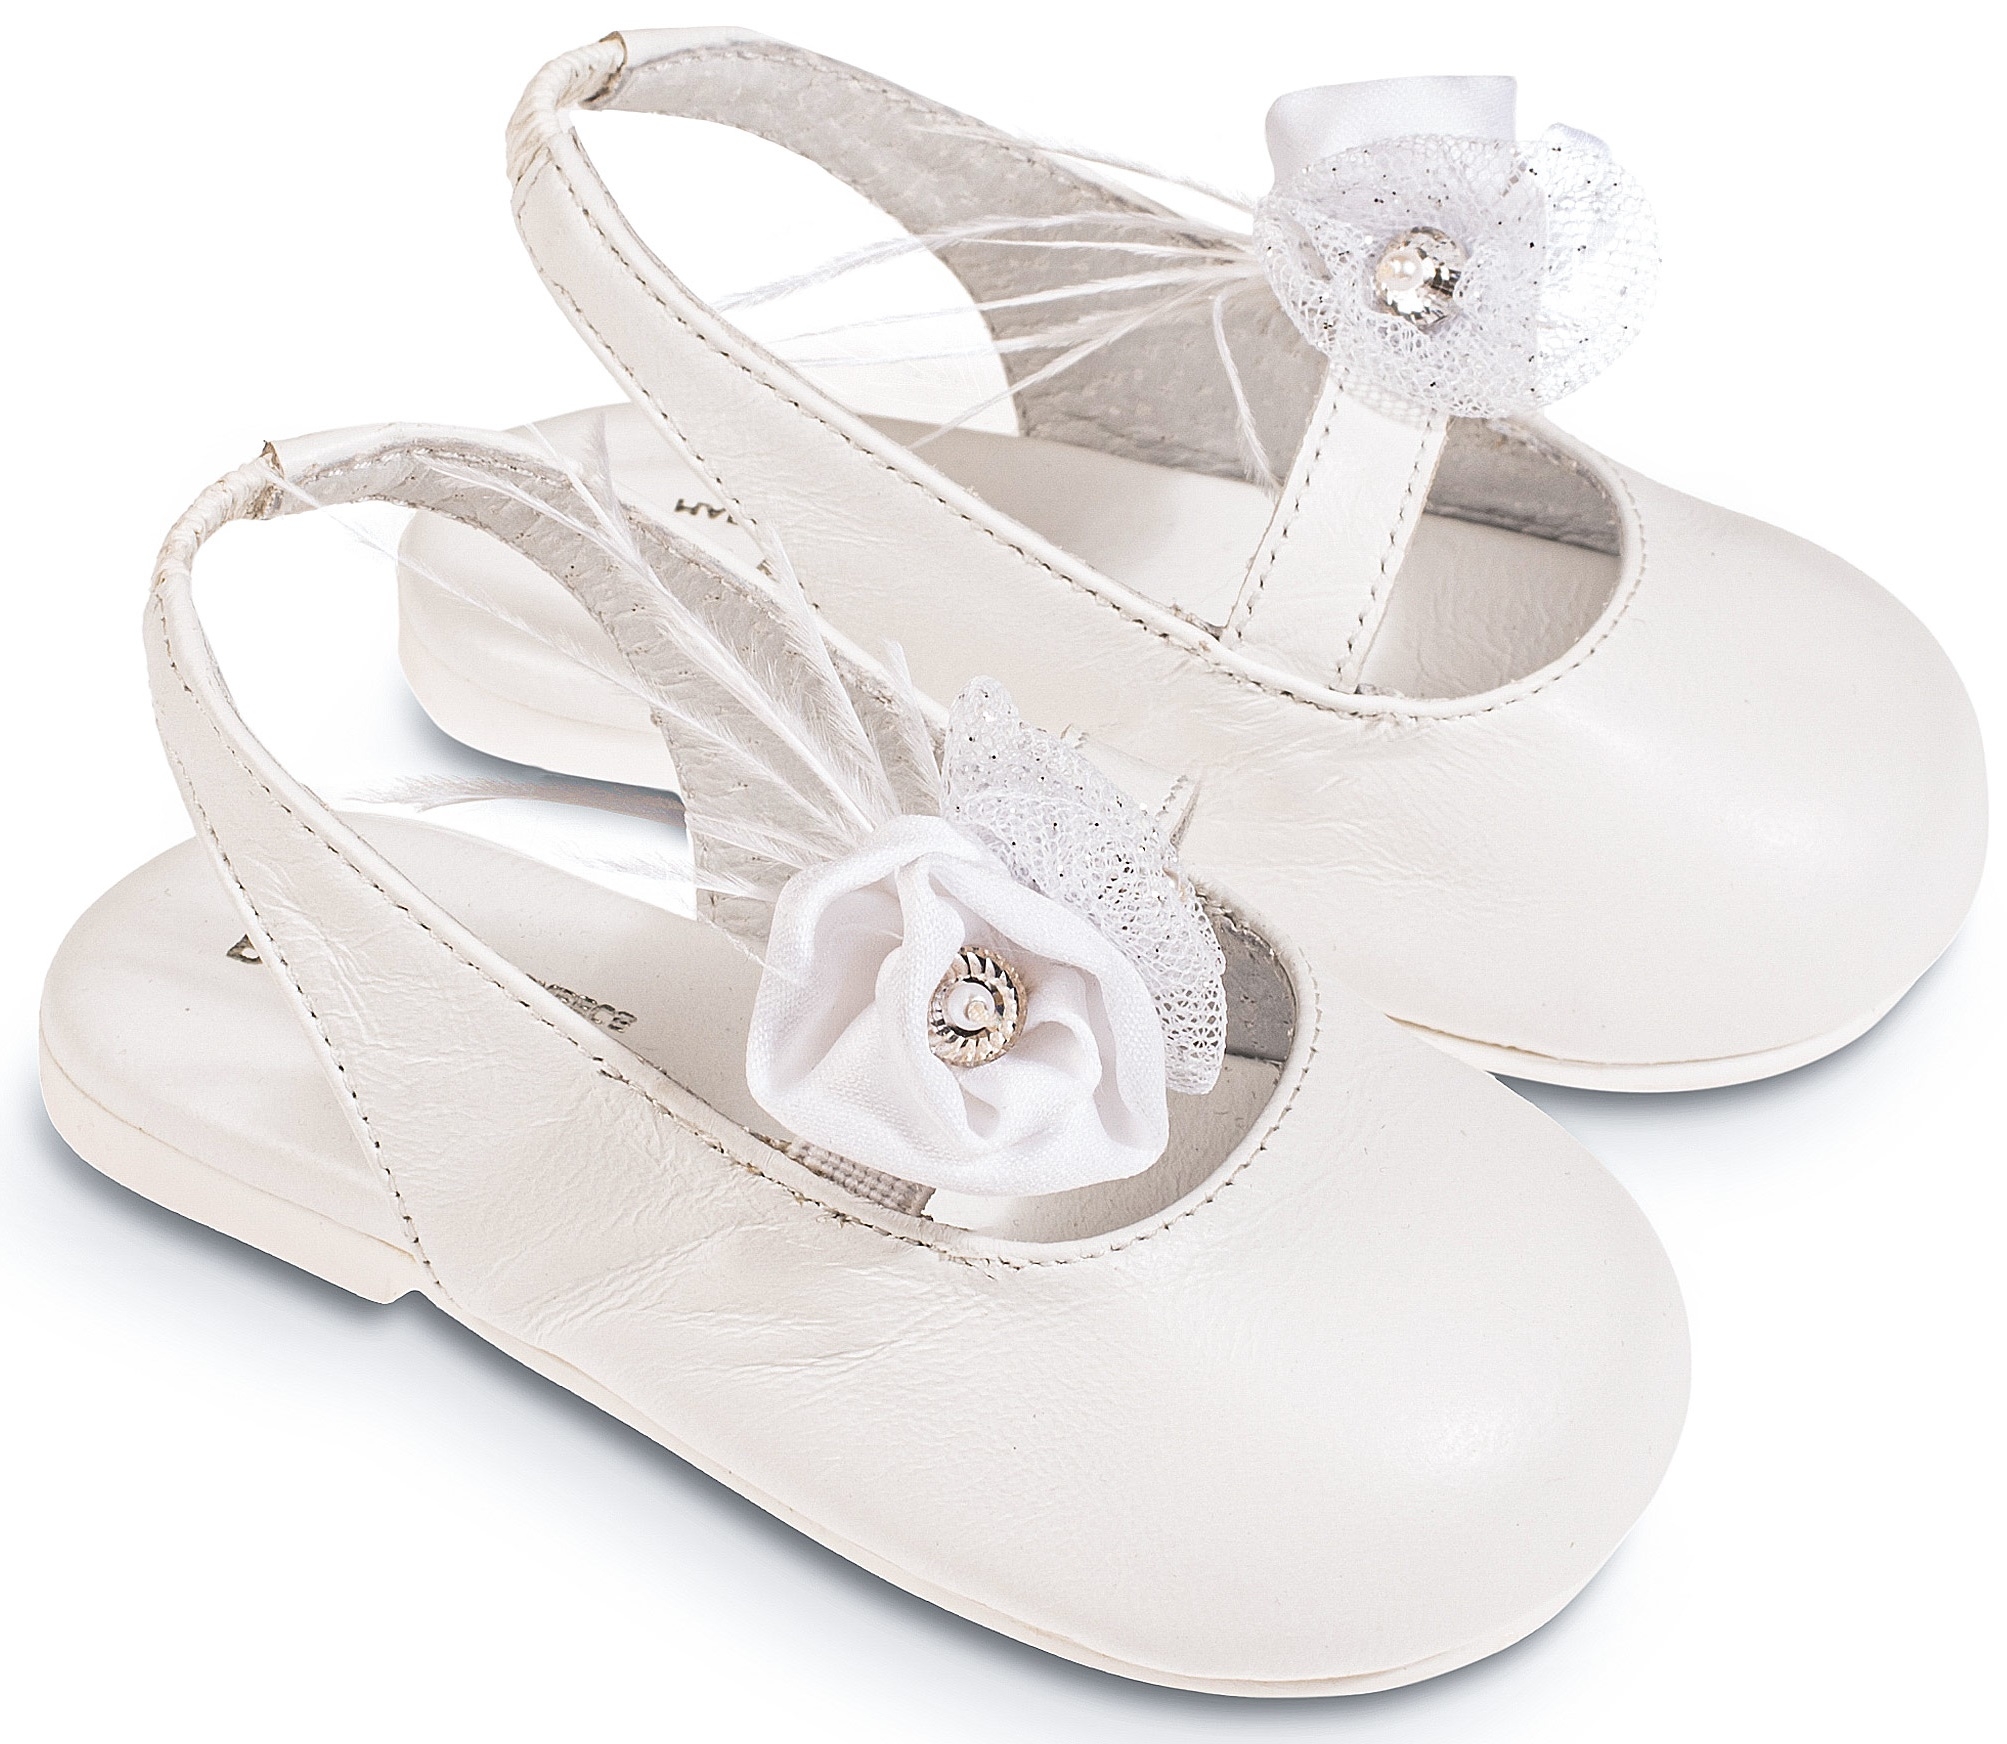 Σαμπό  white - Βαπτιστικά παπούτσια για κορίτσι